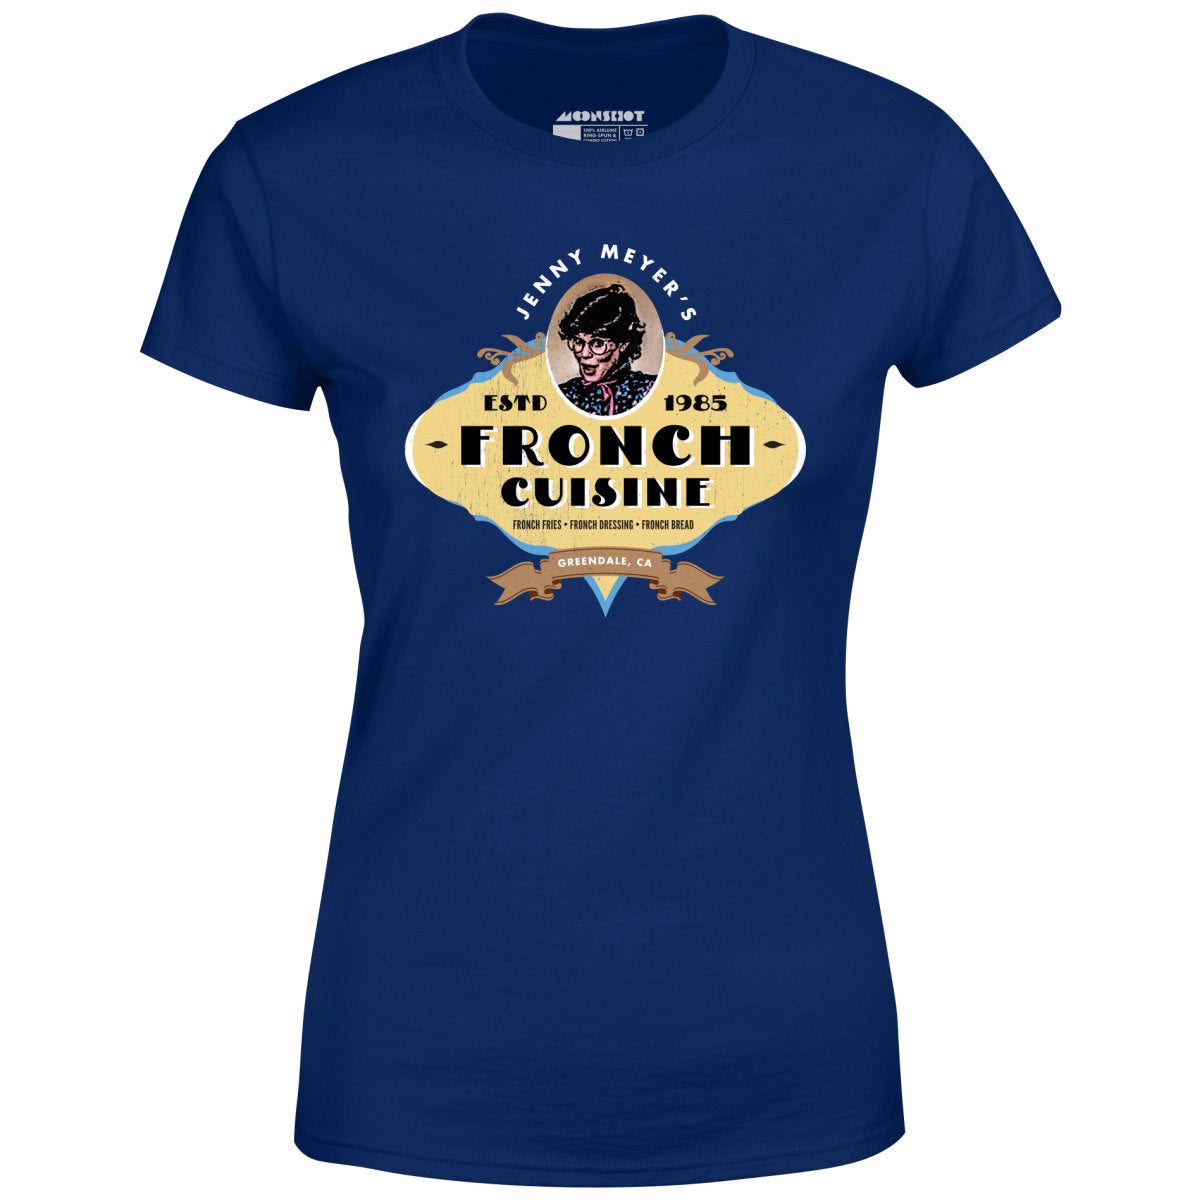 Jenny Meyers Fronch Cuisine - Women's T-Shirt